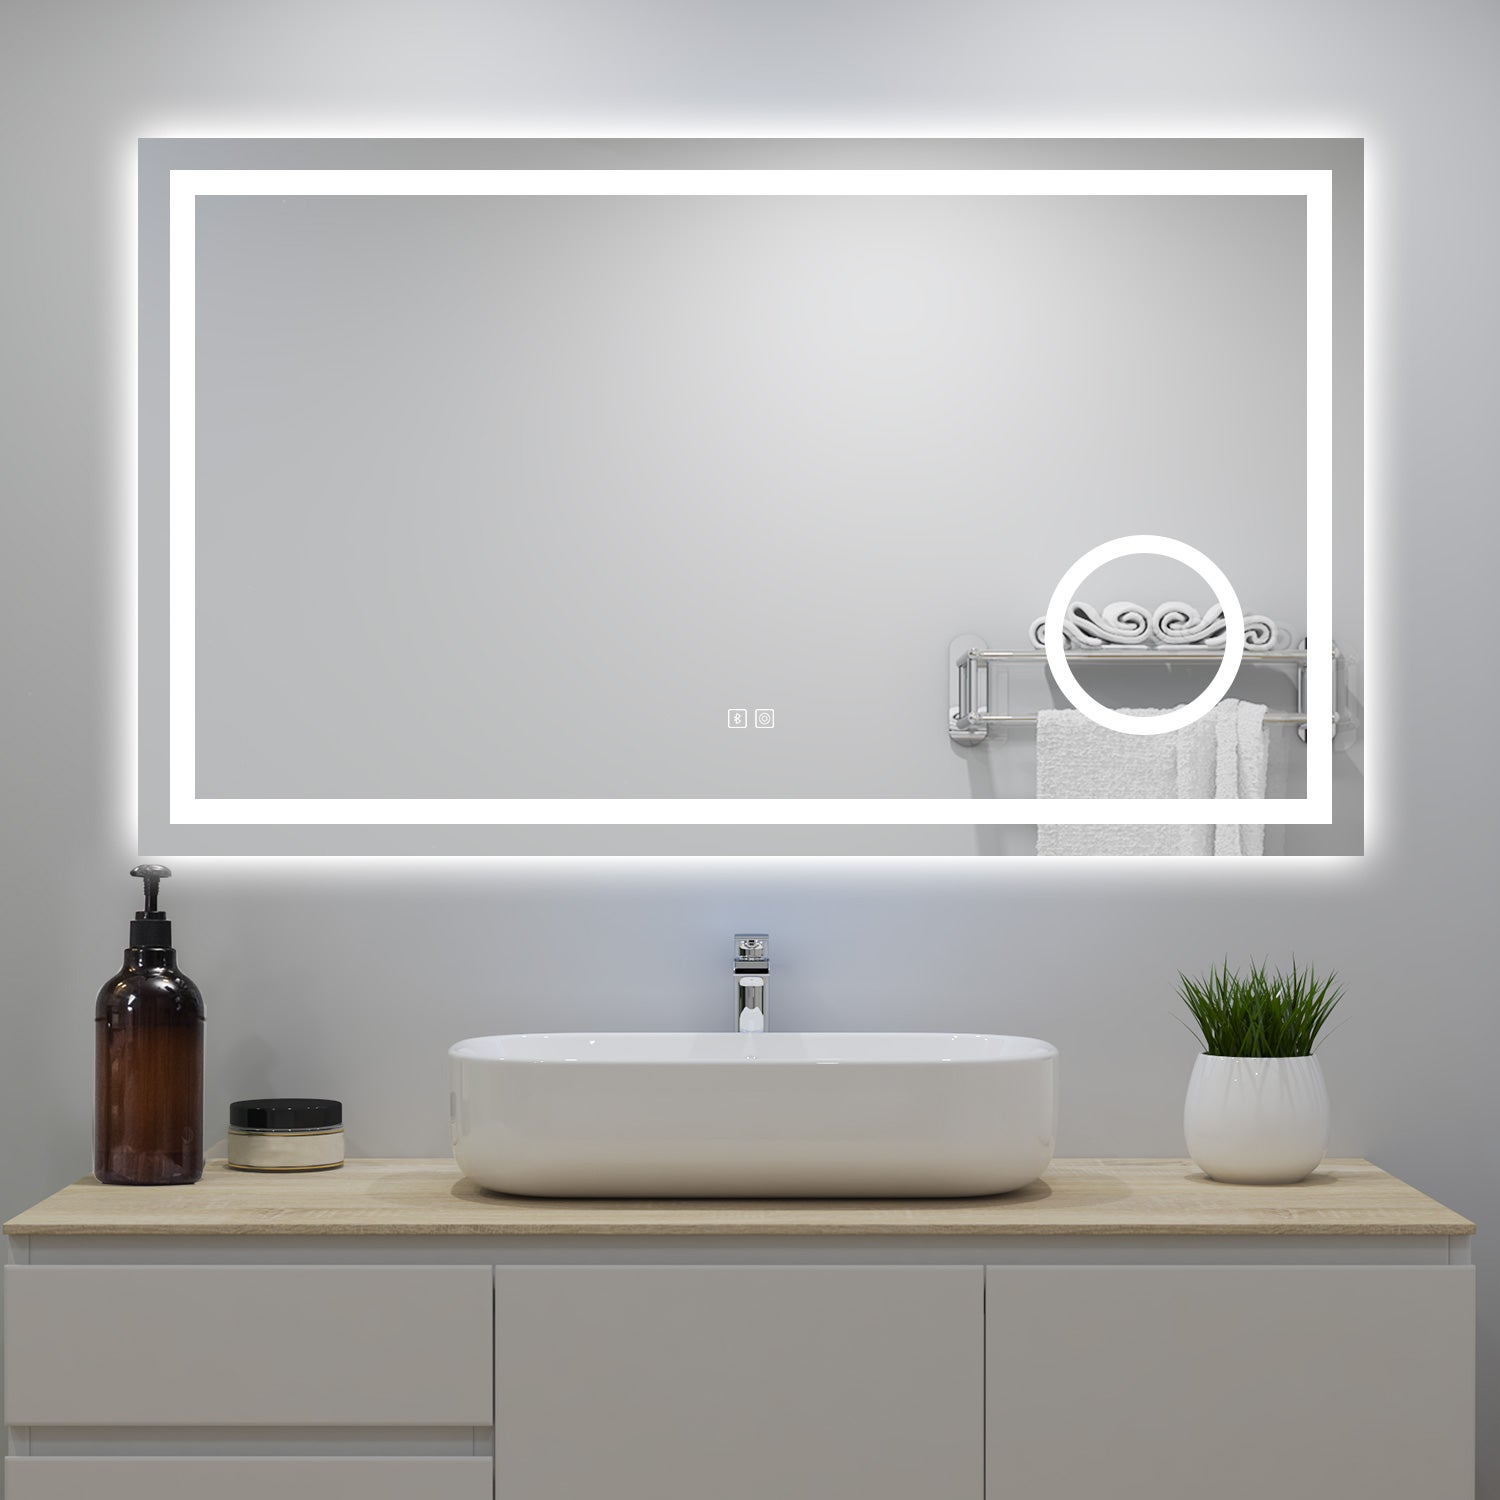 AICA Miroir LED tactile avec bluetooth 80*60cm, 3 couleurs antibuée avec un  miroir grossissant intégré avec lumière